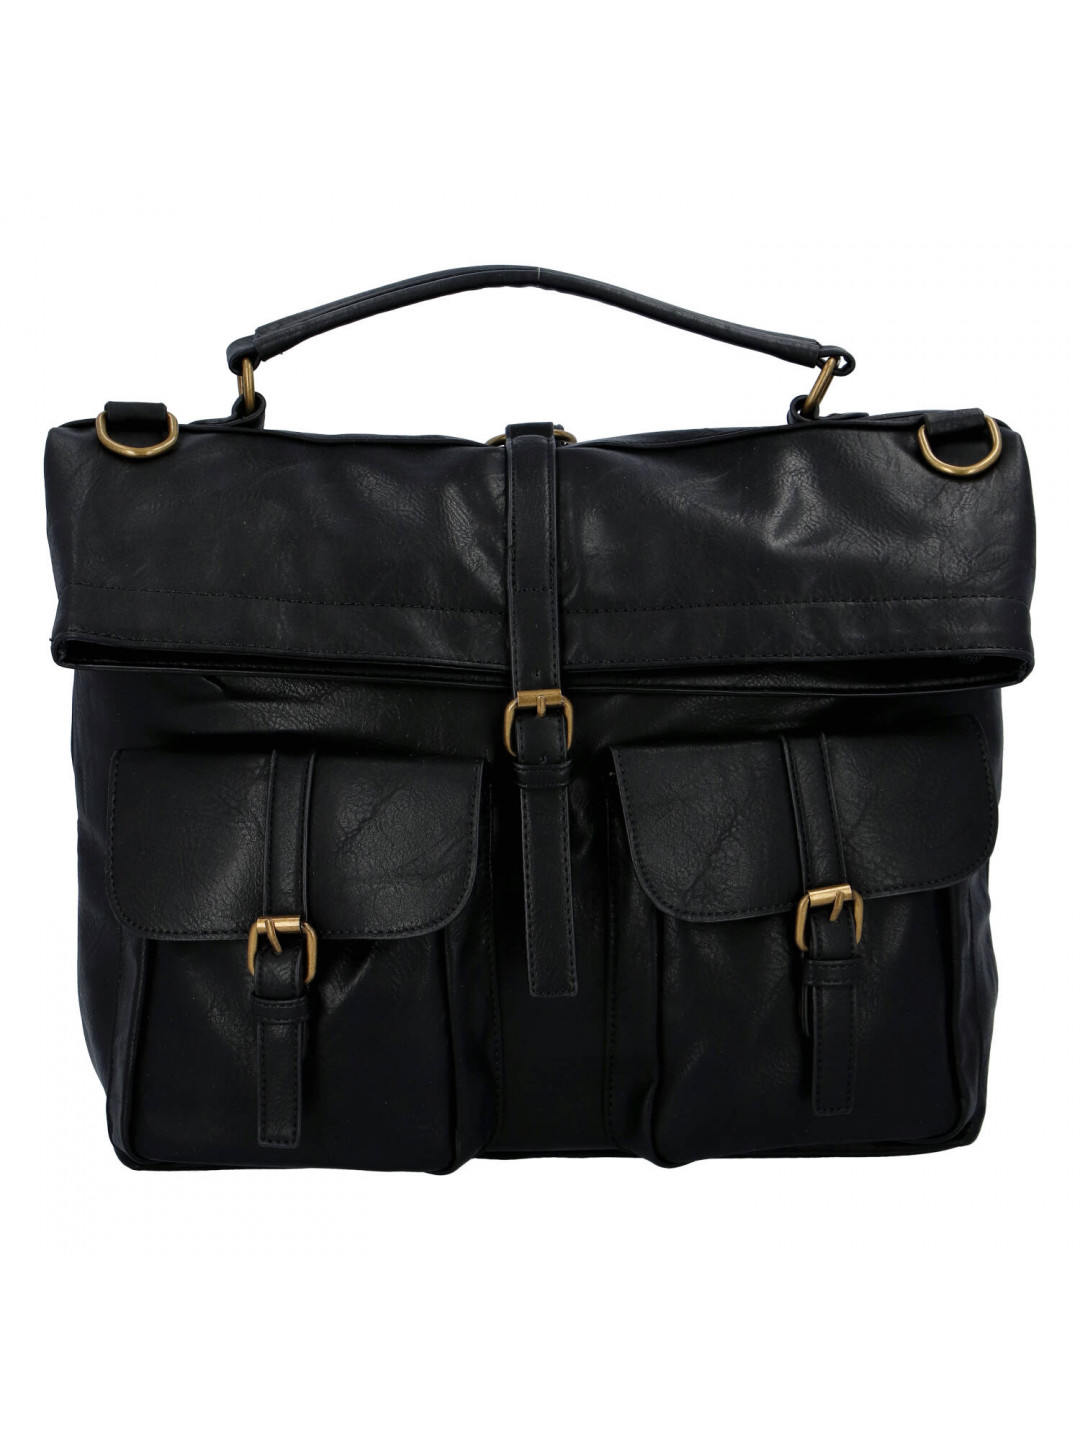 Zajímavý a stylový koženkový unisex batoh Odette černá